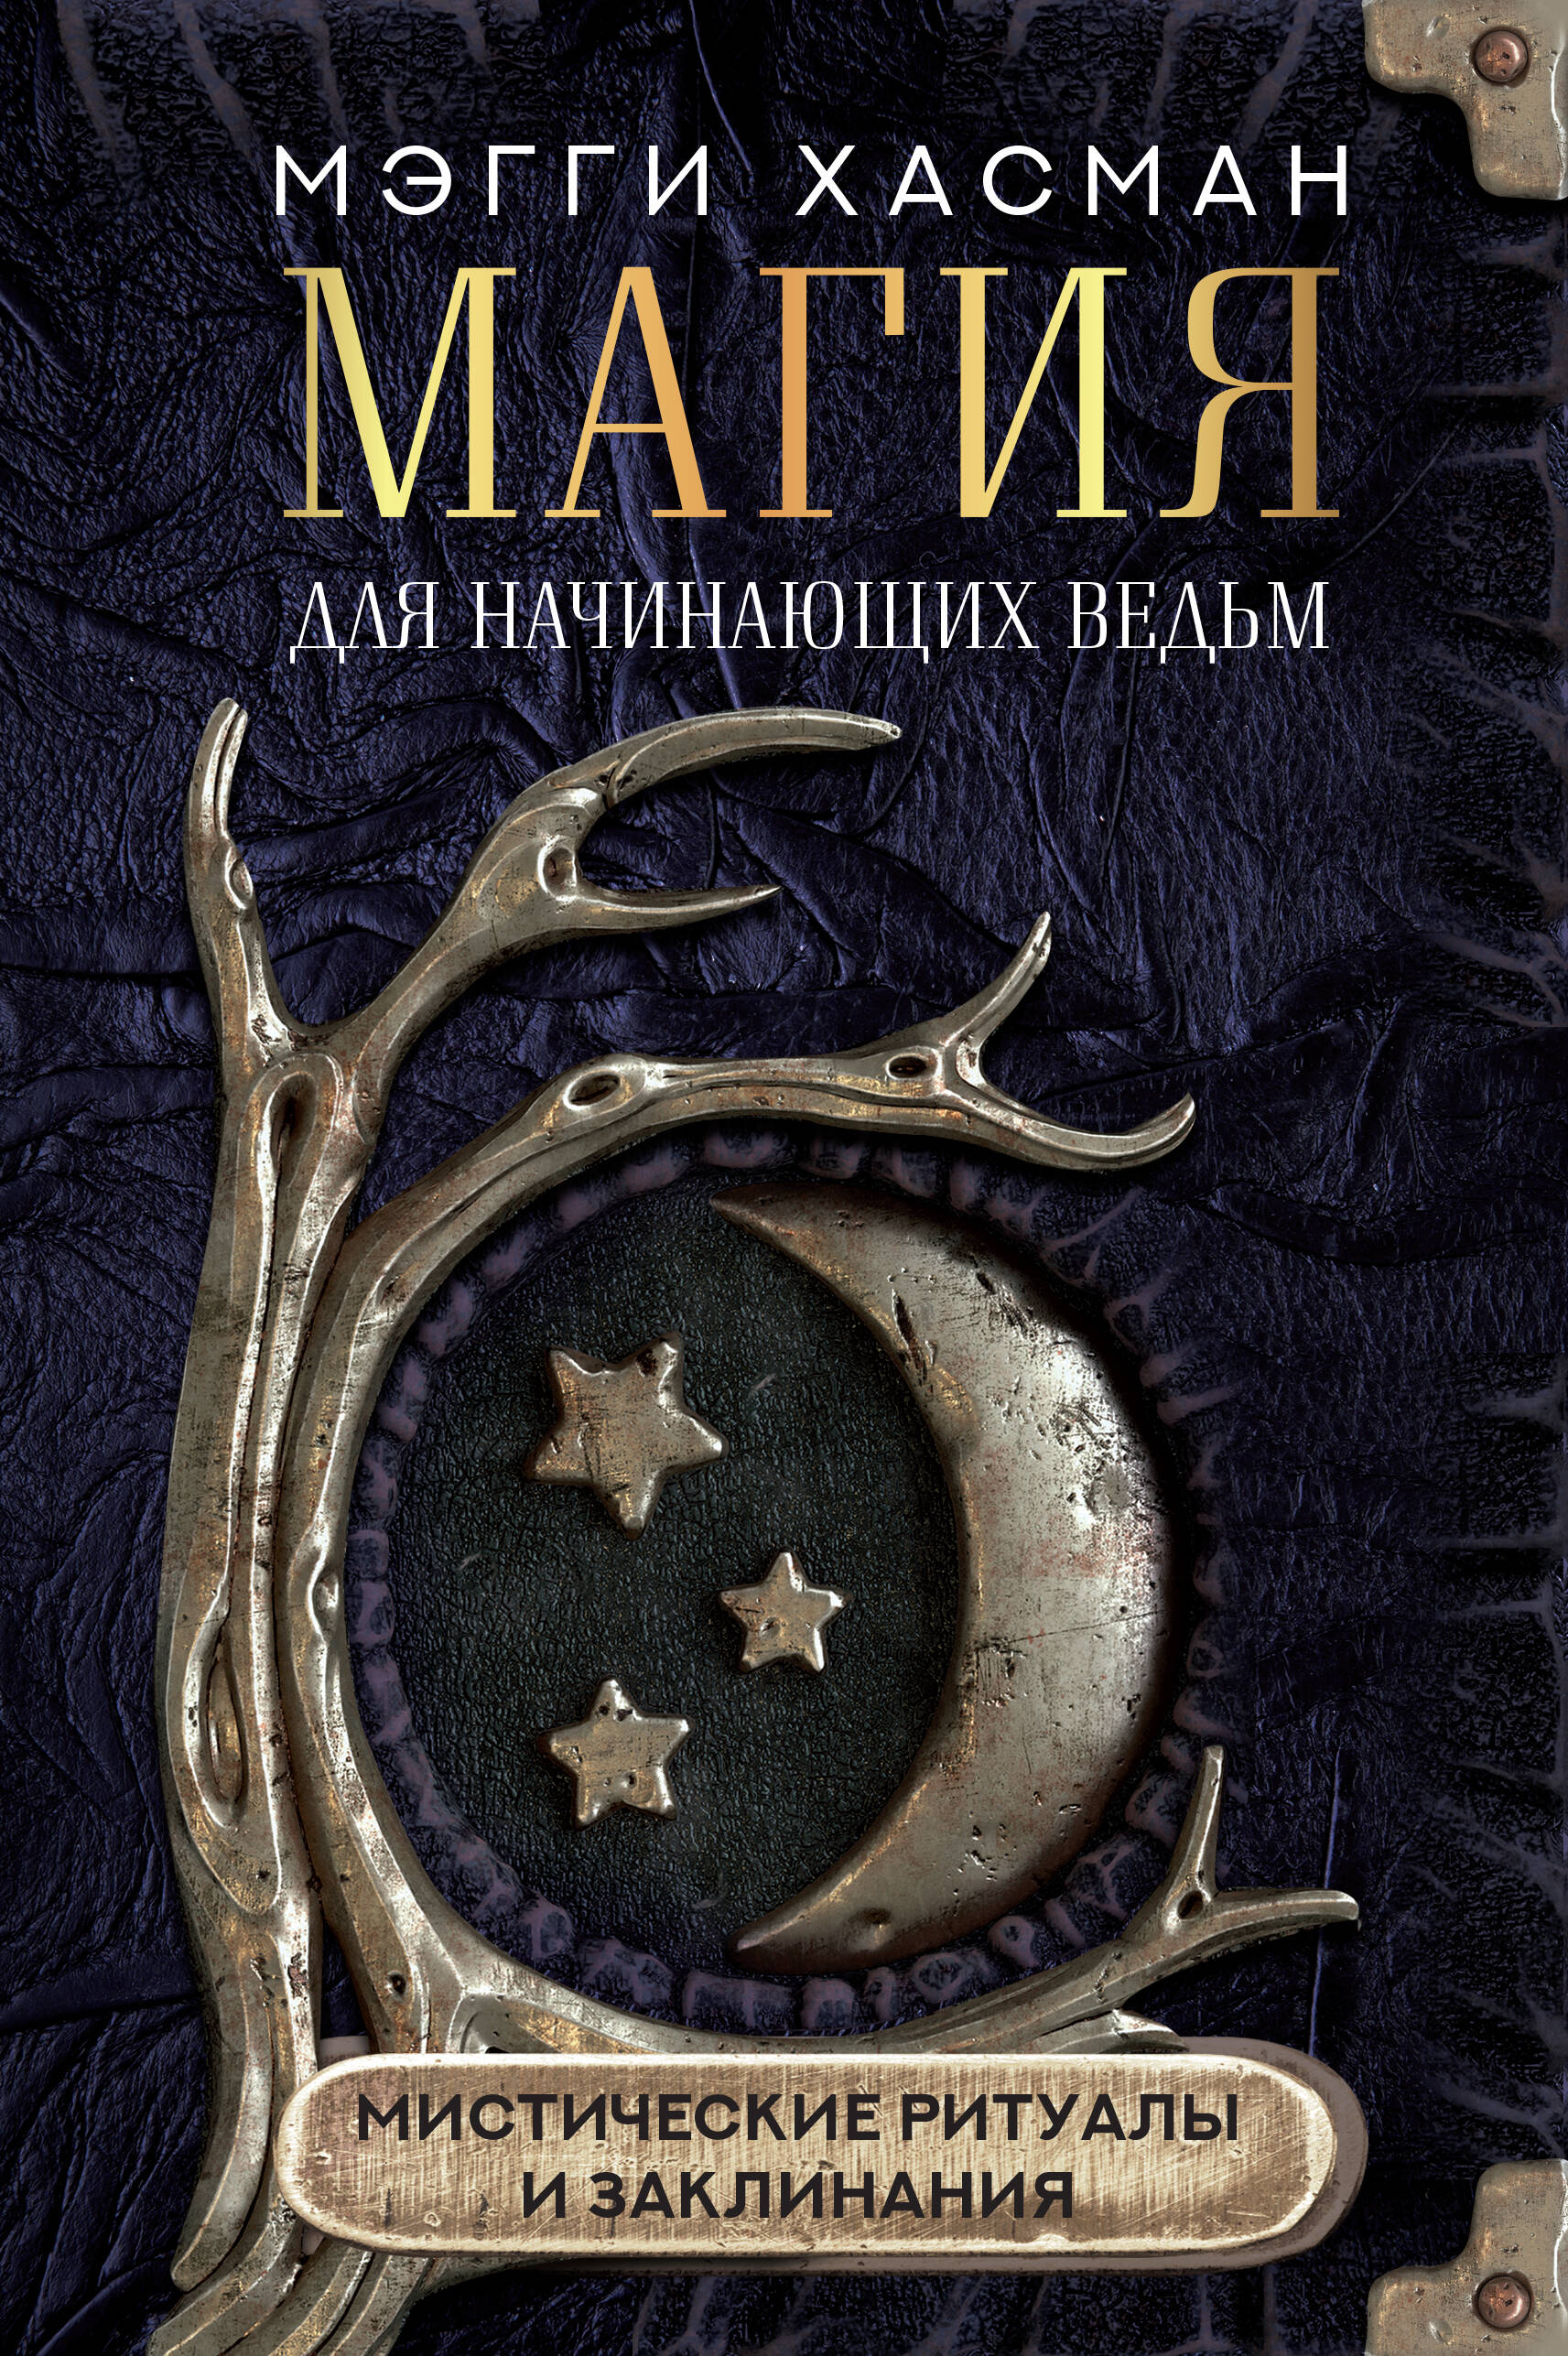 Хасман Мэгги Магия для начинающих ведьм: мистические ритуалы и заклинания уильямс брэнди практическая магия для начинающих техники и ритуалы для фокусирования энергии